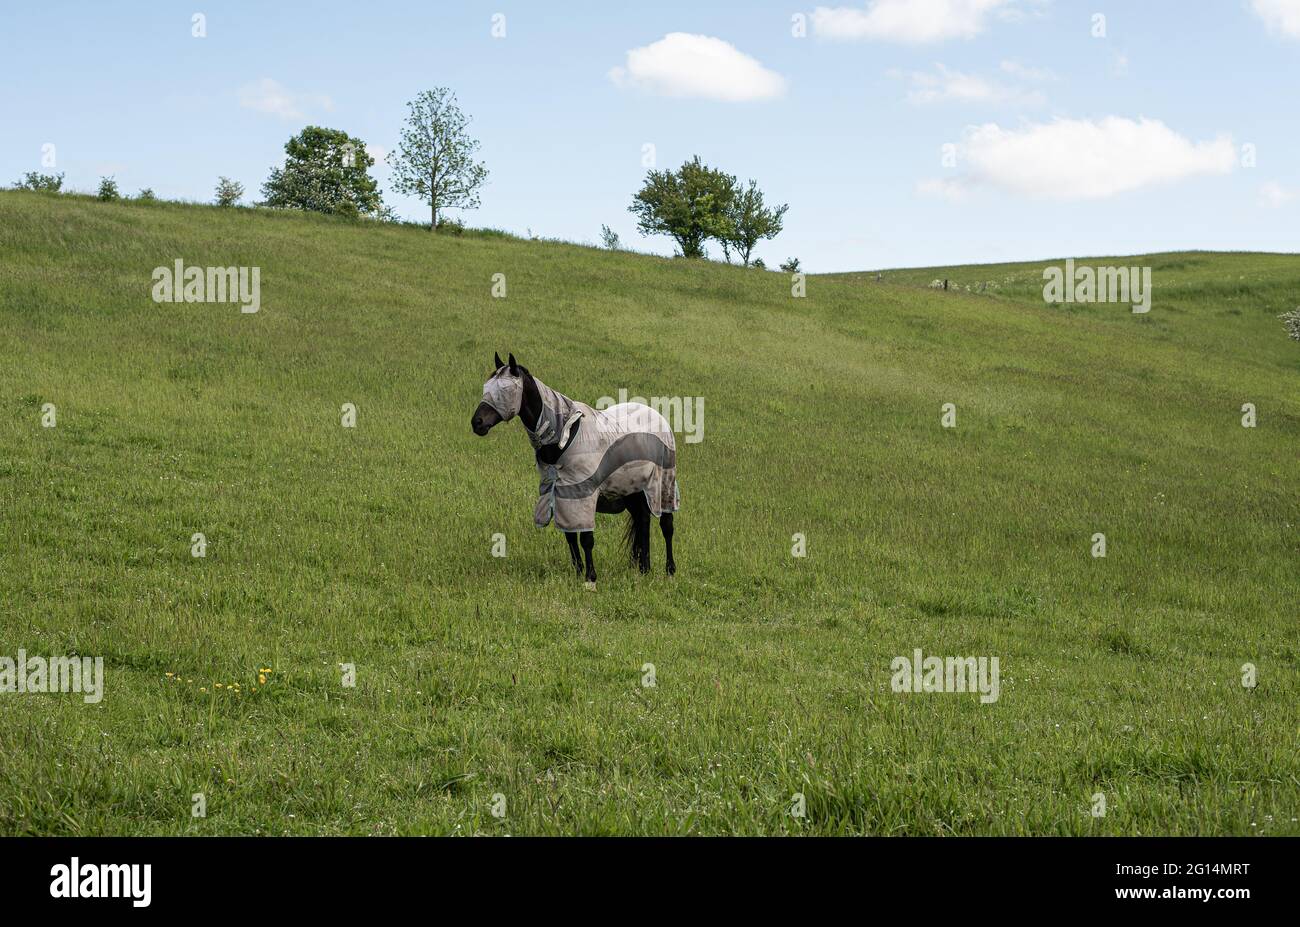 Cavallo con la testa bendata contro gli insetti e una coperta di cavallo in piedi su un pascolo verde sotto l'orizzonte blu, Danimarca, 2 giugno 2021 Foto Stock